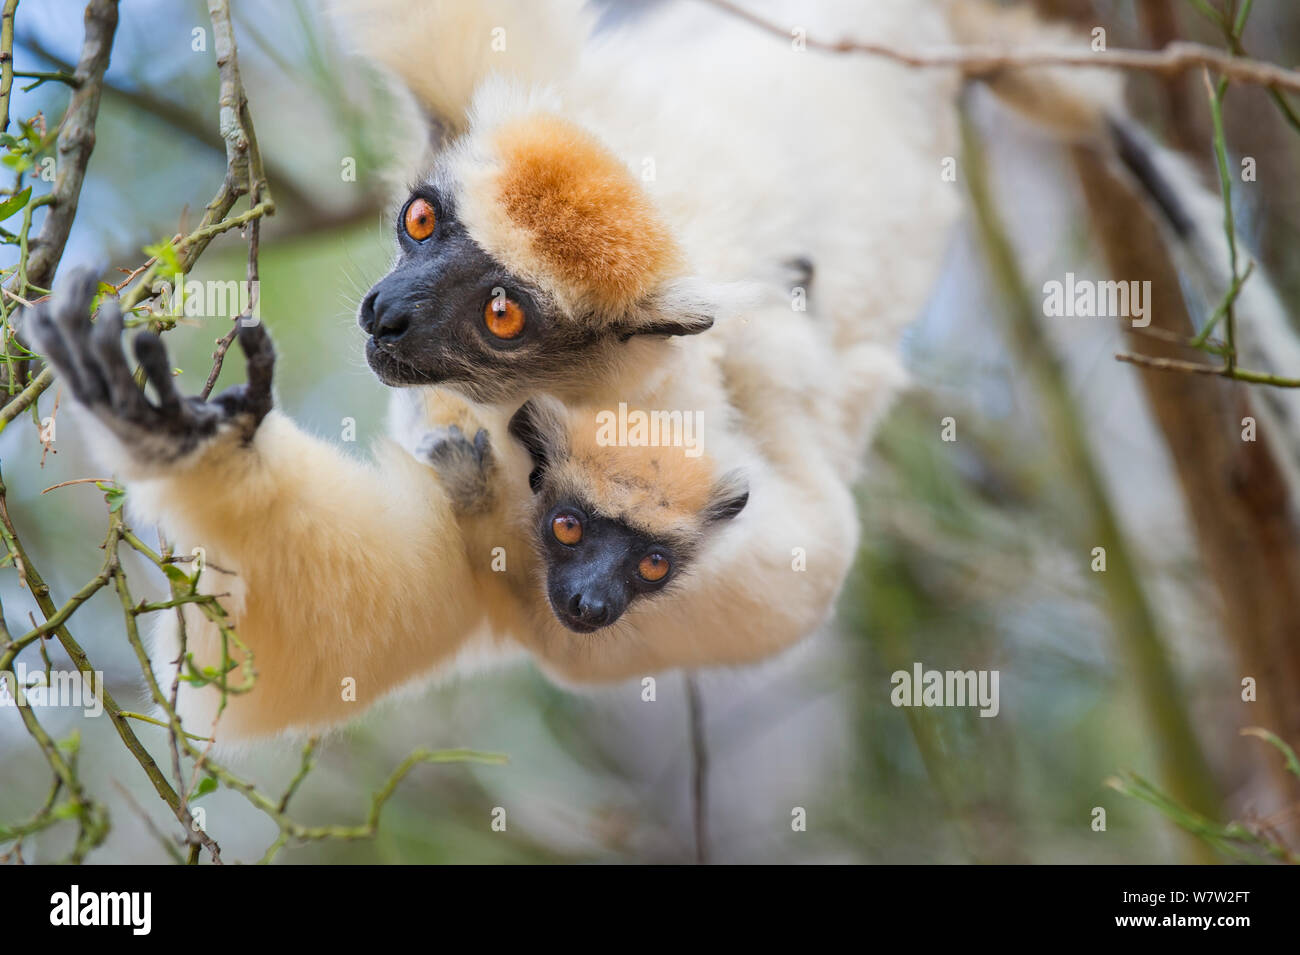 Weibliche Golden gekrönte Sifaka (Propithecus tattersalli) Durchführung 2-monatigen Säuglings- und Fütterung auf Knospen in die Baumkronen. Die Wälder in der Nähe des Dorfes, in der Nähe von Daraina Andranotsimaty, Madagaskar. Kritisch gefährdet. Stockfoto